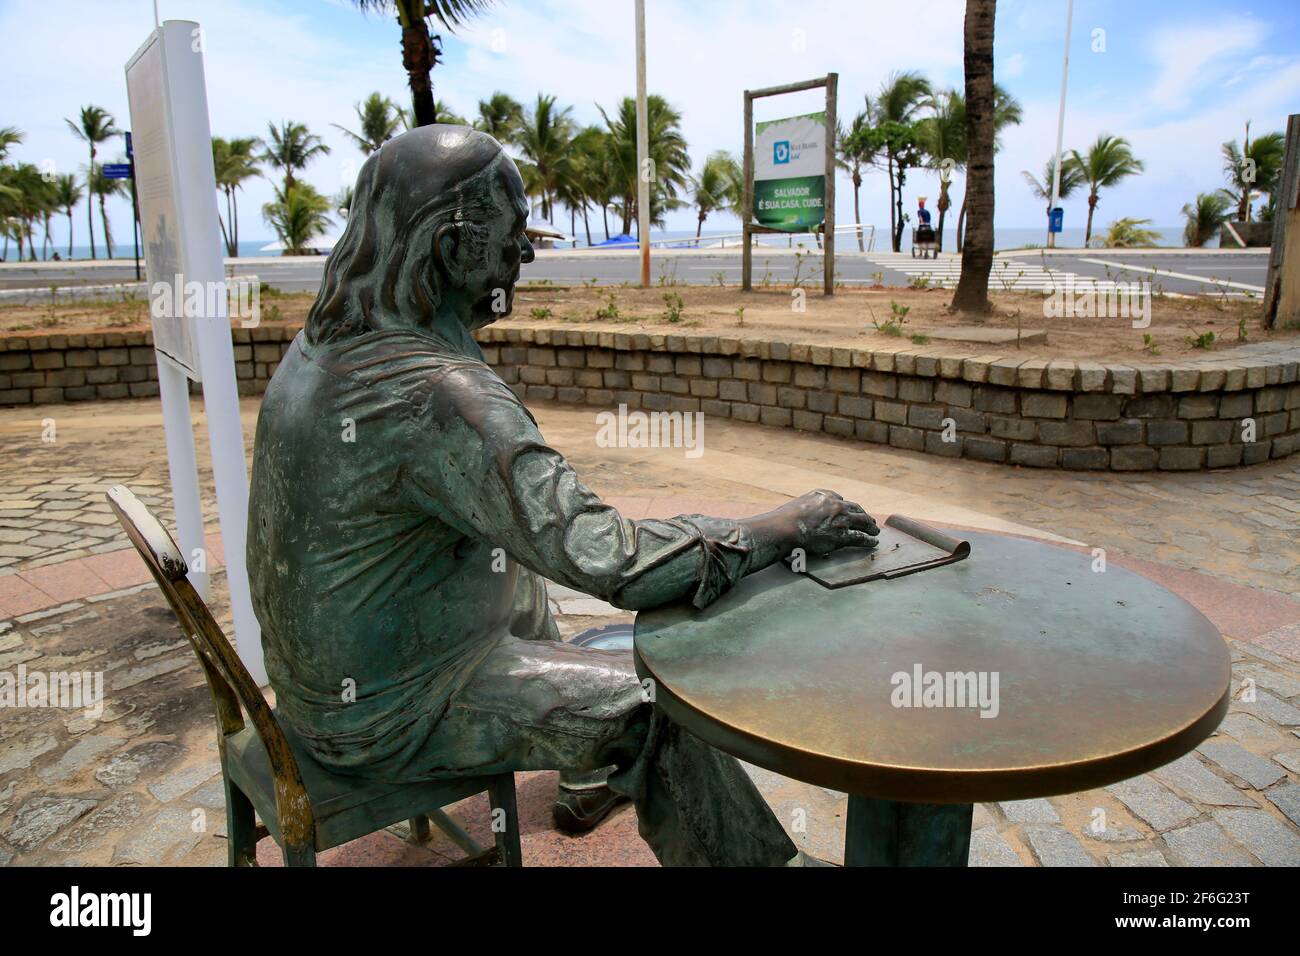 salvador, bahía, brasil - 21 de diciembre de 2020: La estatua del poeta Vinicius de Moraes se ve en el barrio de Itapua, en la ciudad de Salvador. *** Foto de stock